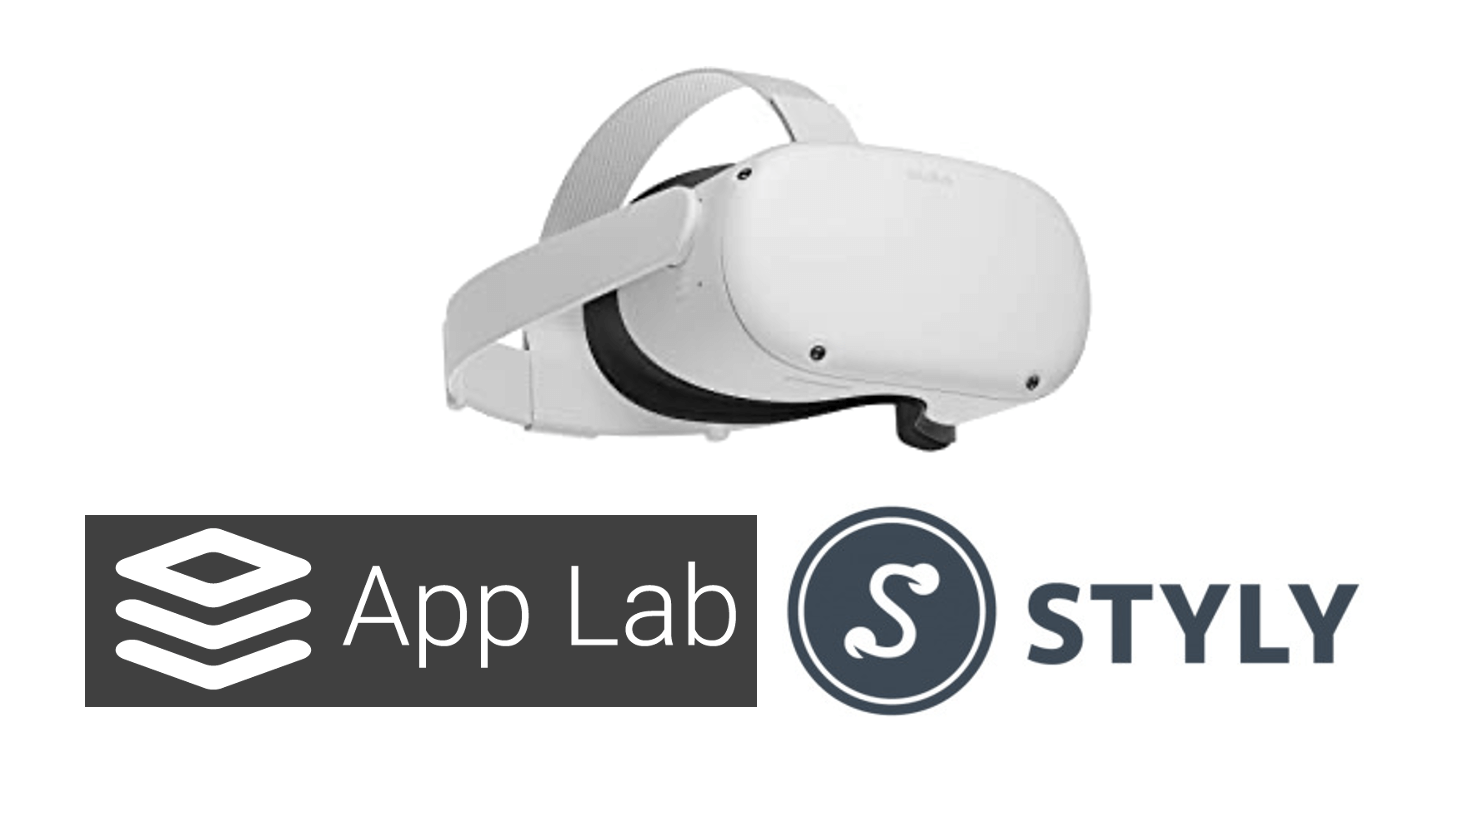 Noclip VR on SideTest - Test Mode Oculus Quest Games & Apps including  AppLab Games ( Oculus App Lab )